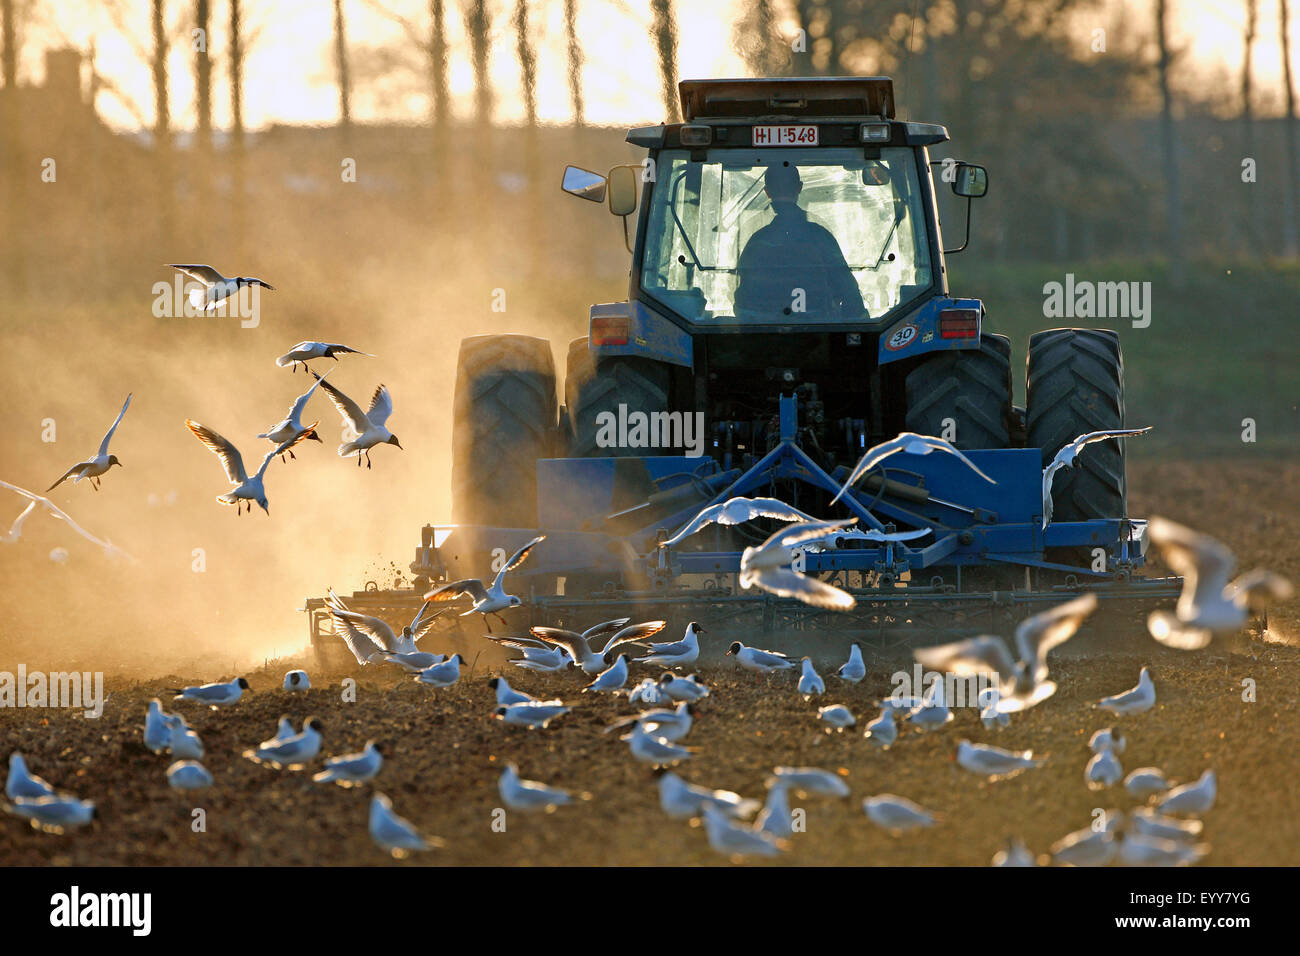 Las gaviotas siguiente tractor escarificando un campo, Bélgica Foto de stock